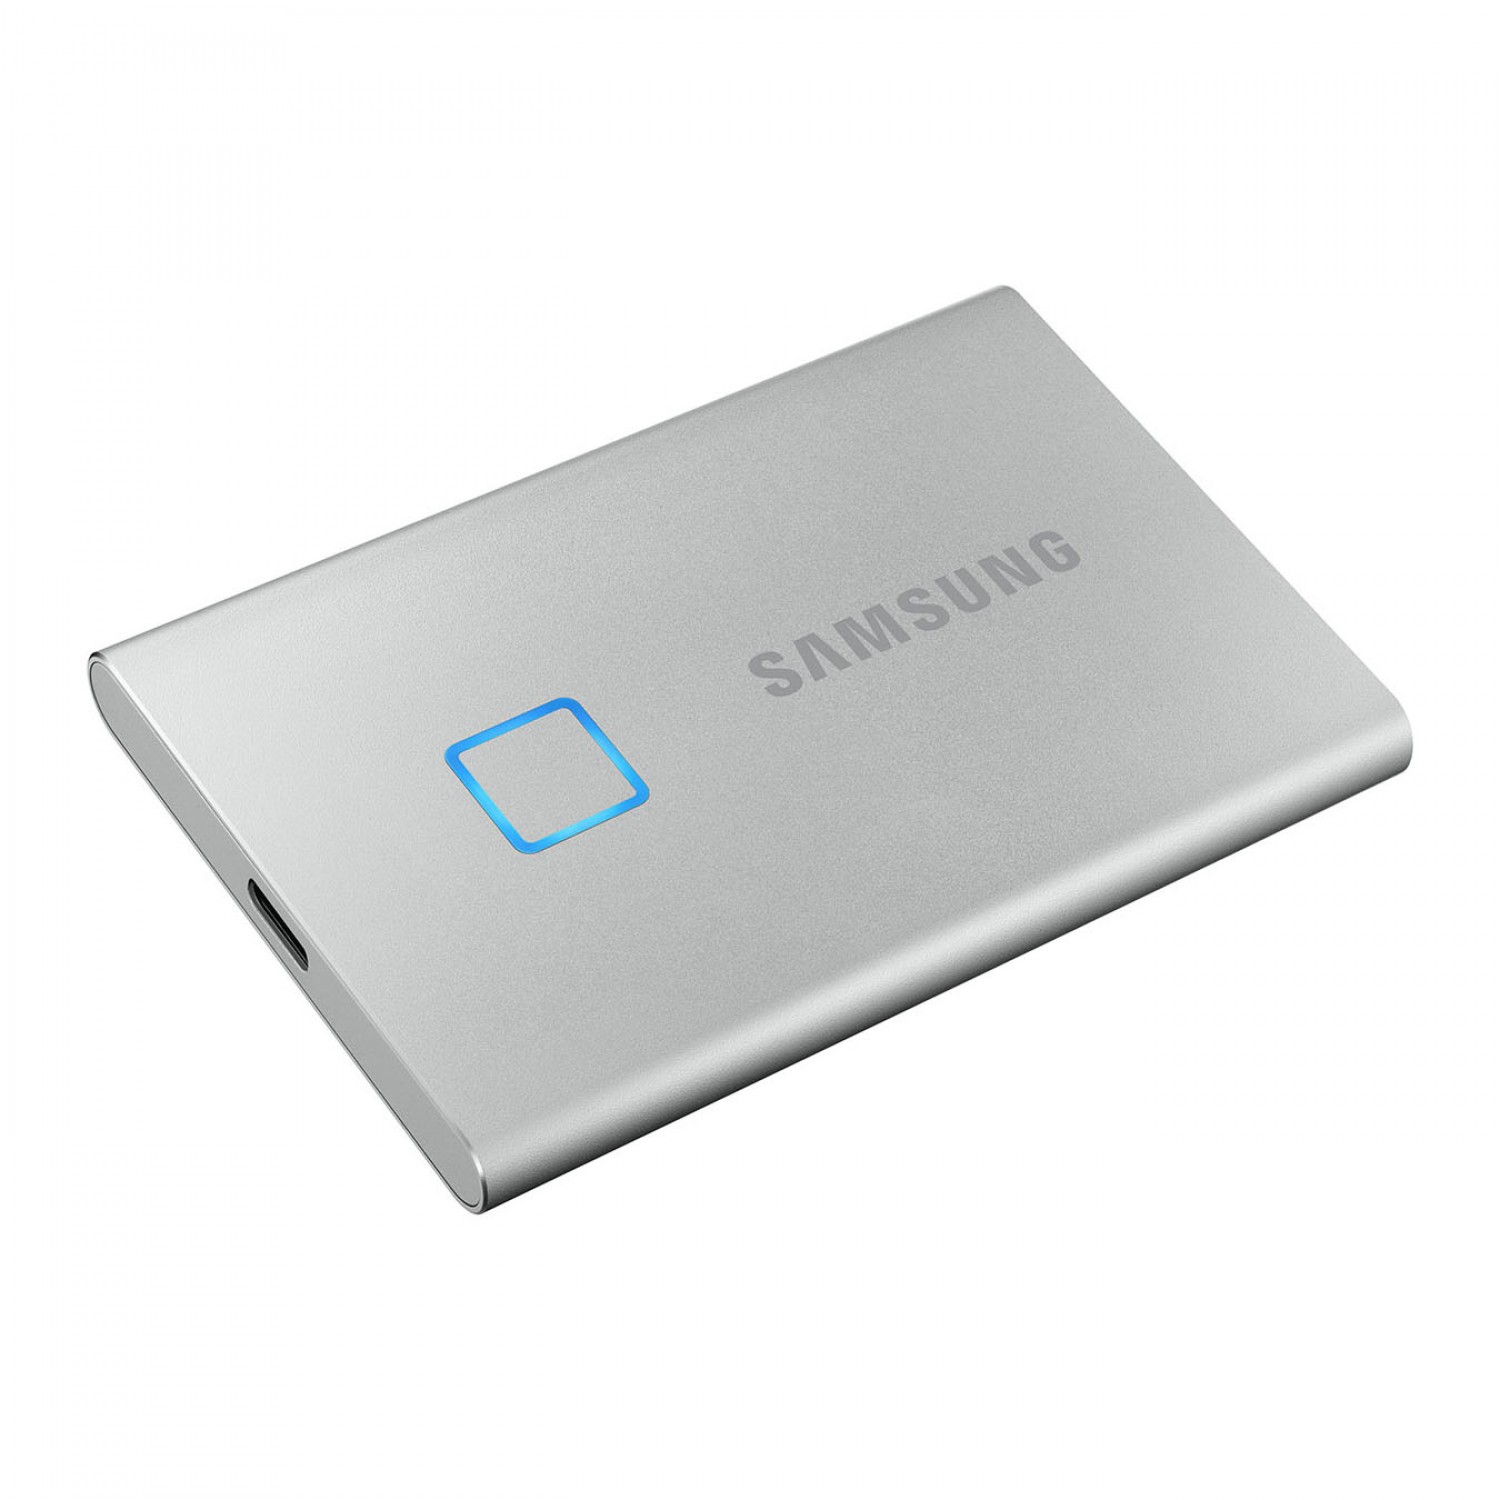 حافظه اس اس دی اکسترنال SAMSUNG T7 Touch 1TB - Silver-1